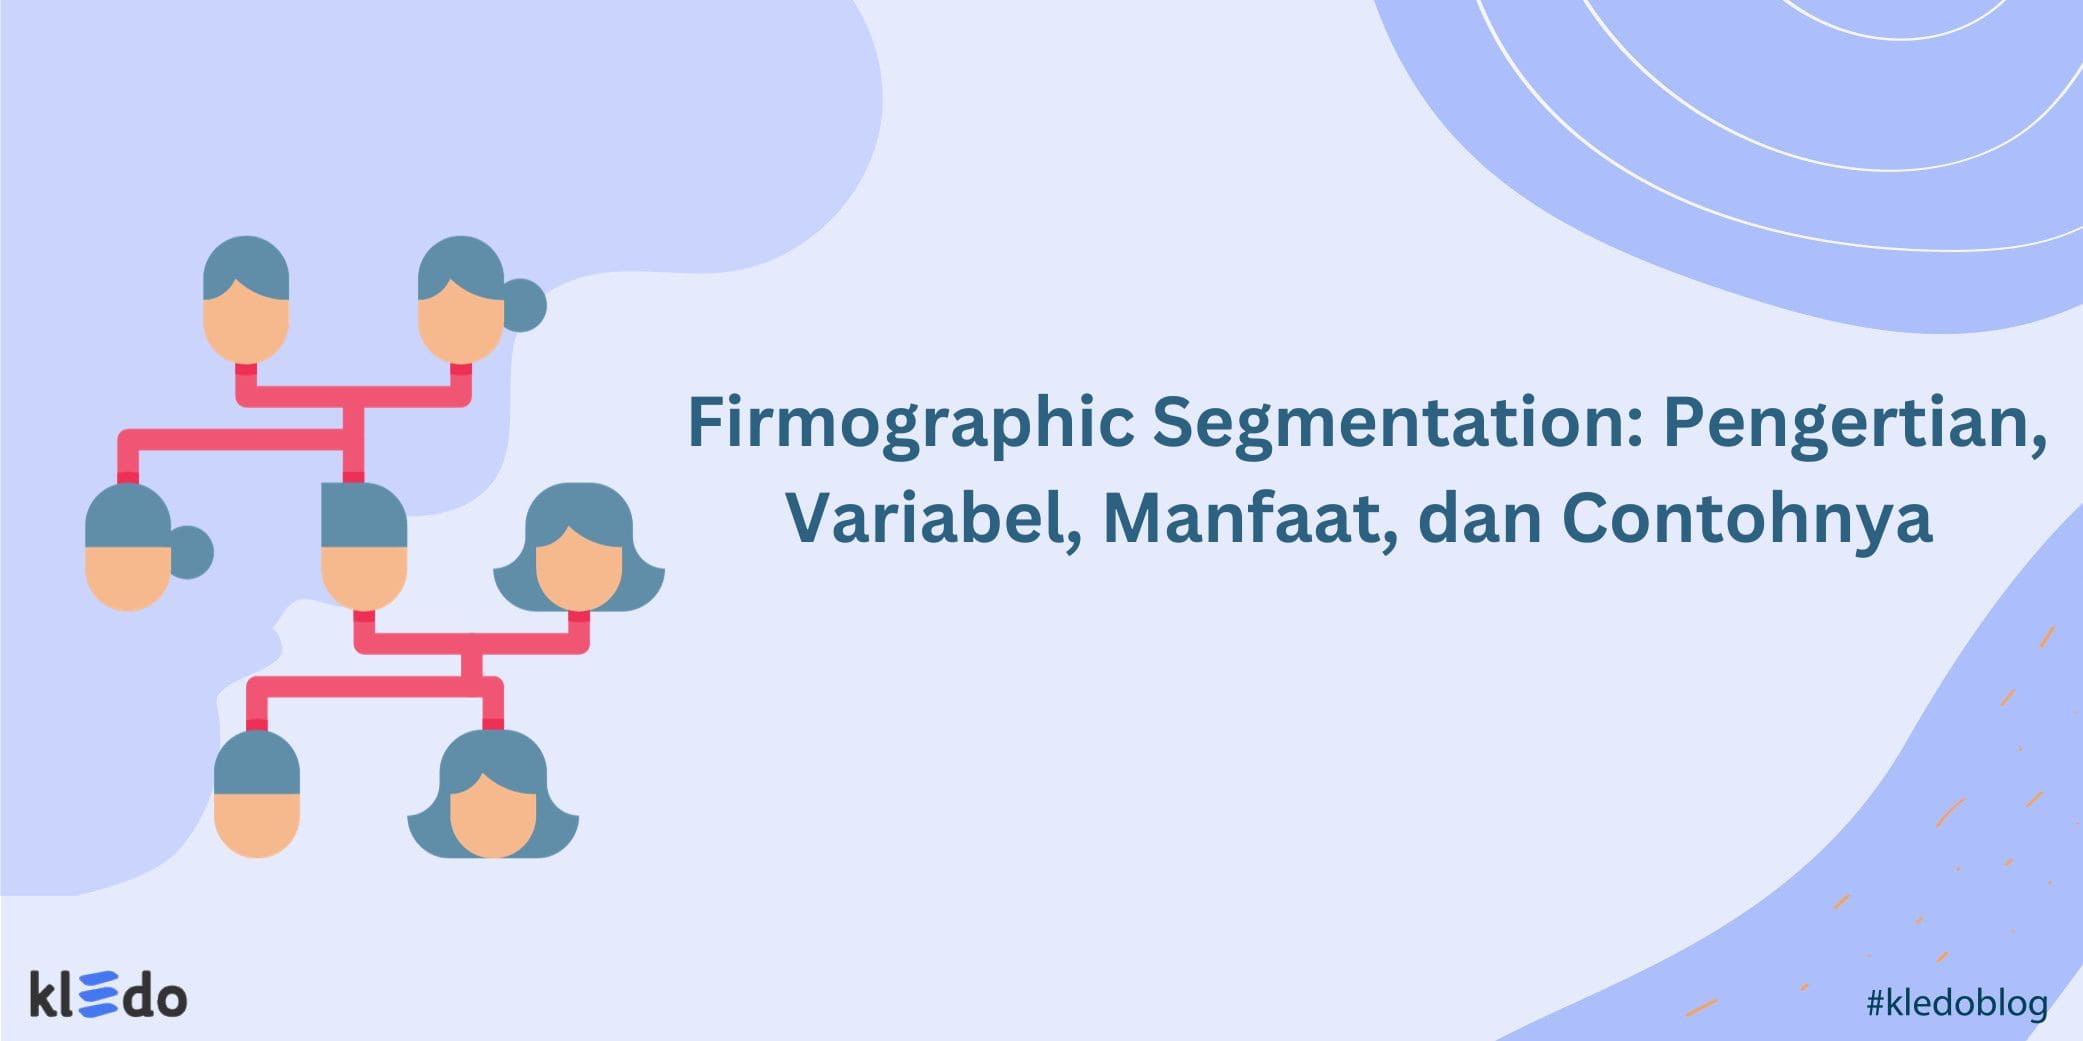 Firmographic Segmentation banner